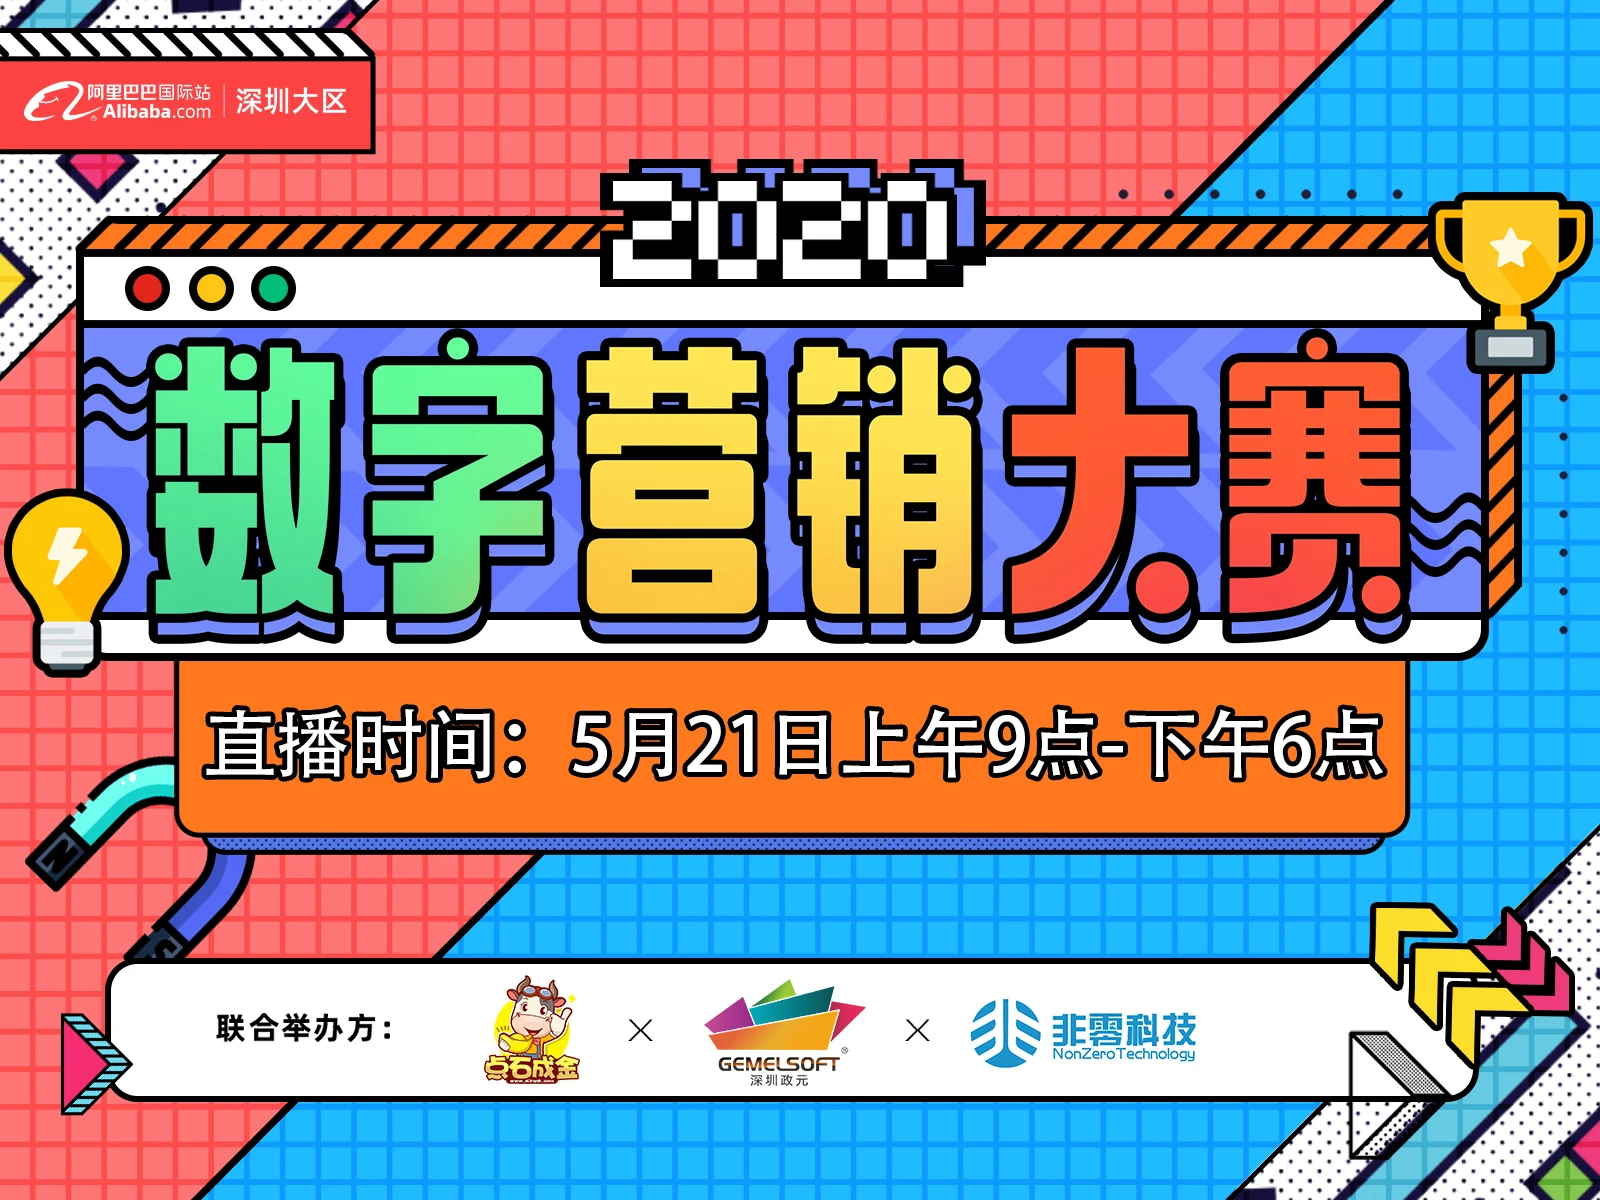 【2020数字营销大赛】深圳大区 深南区域决赛